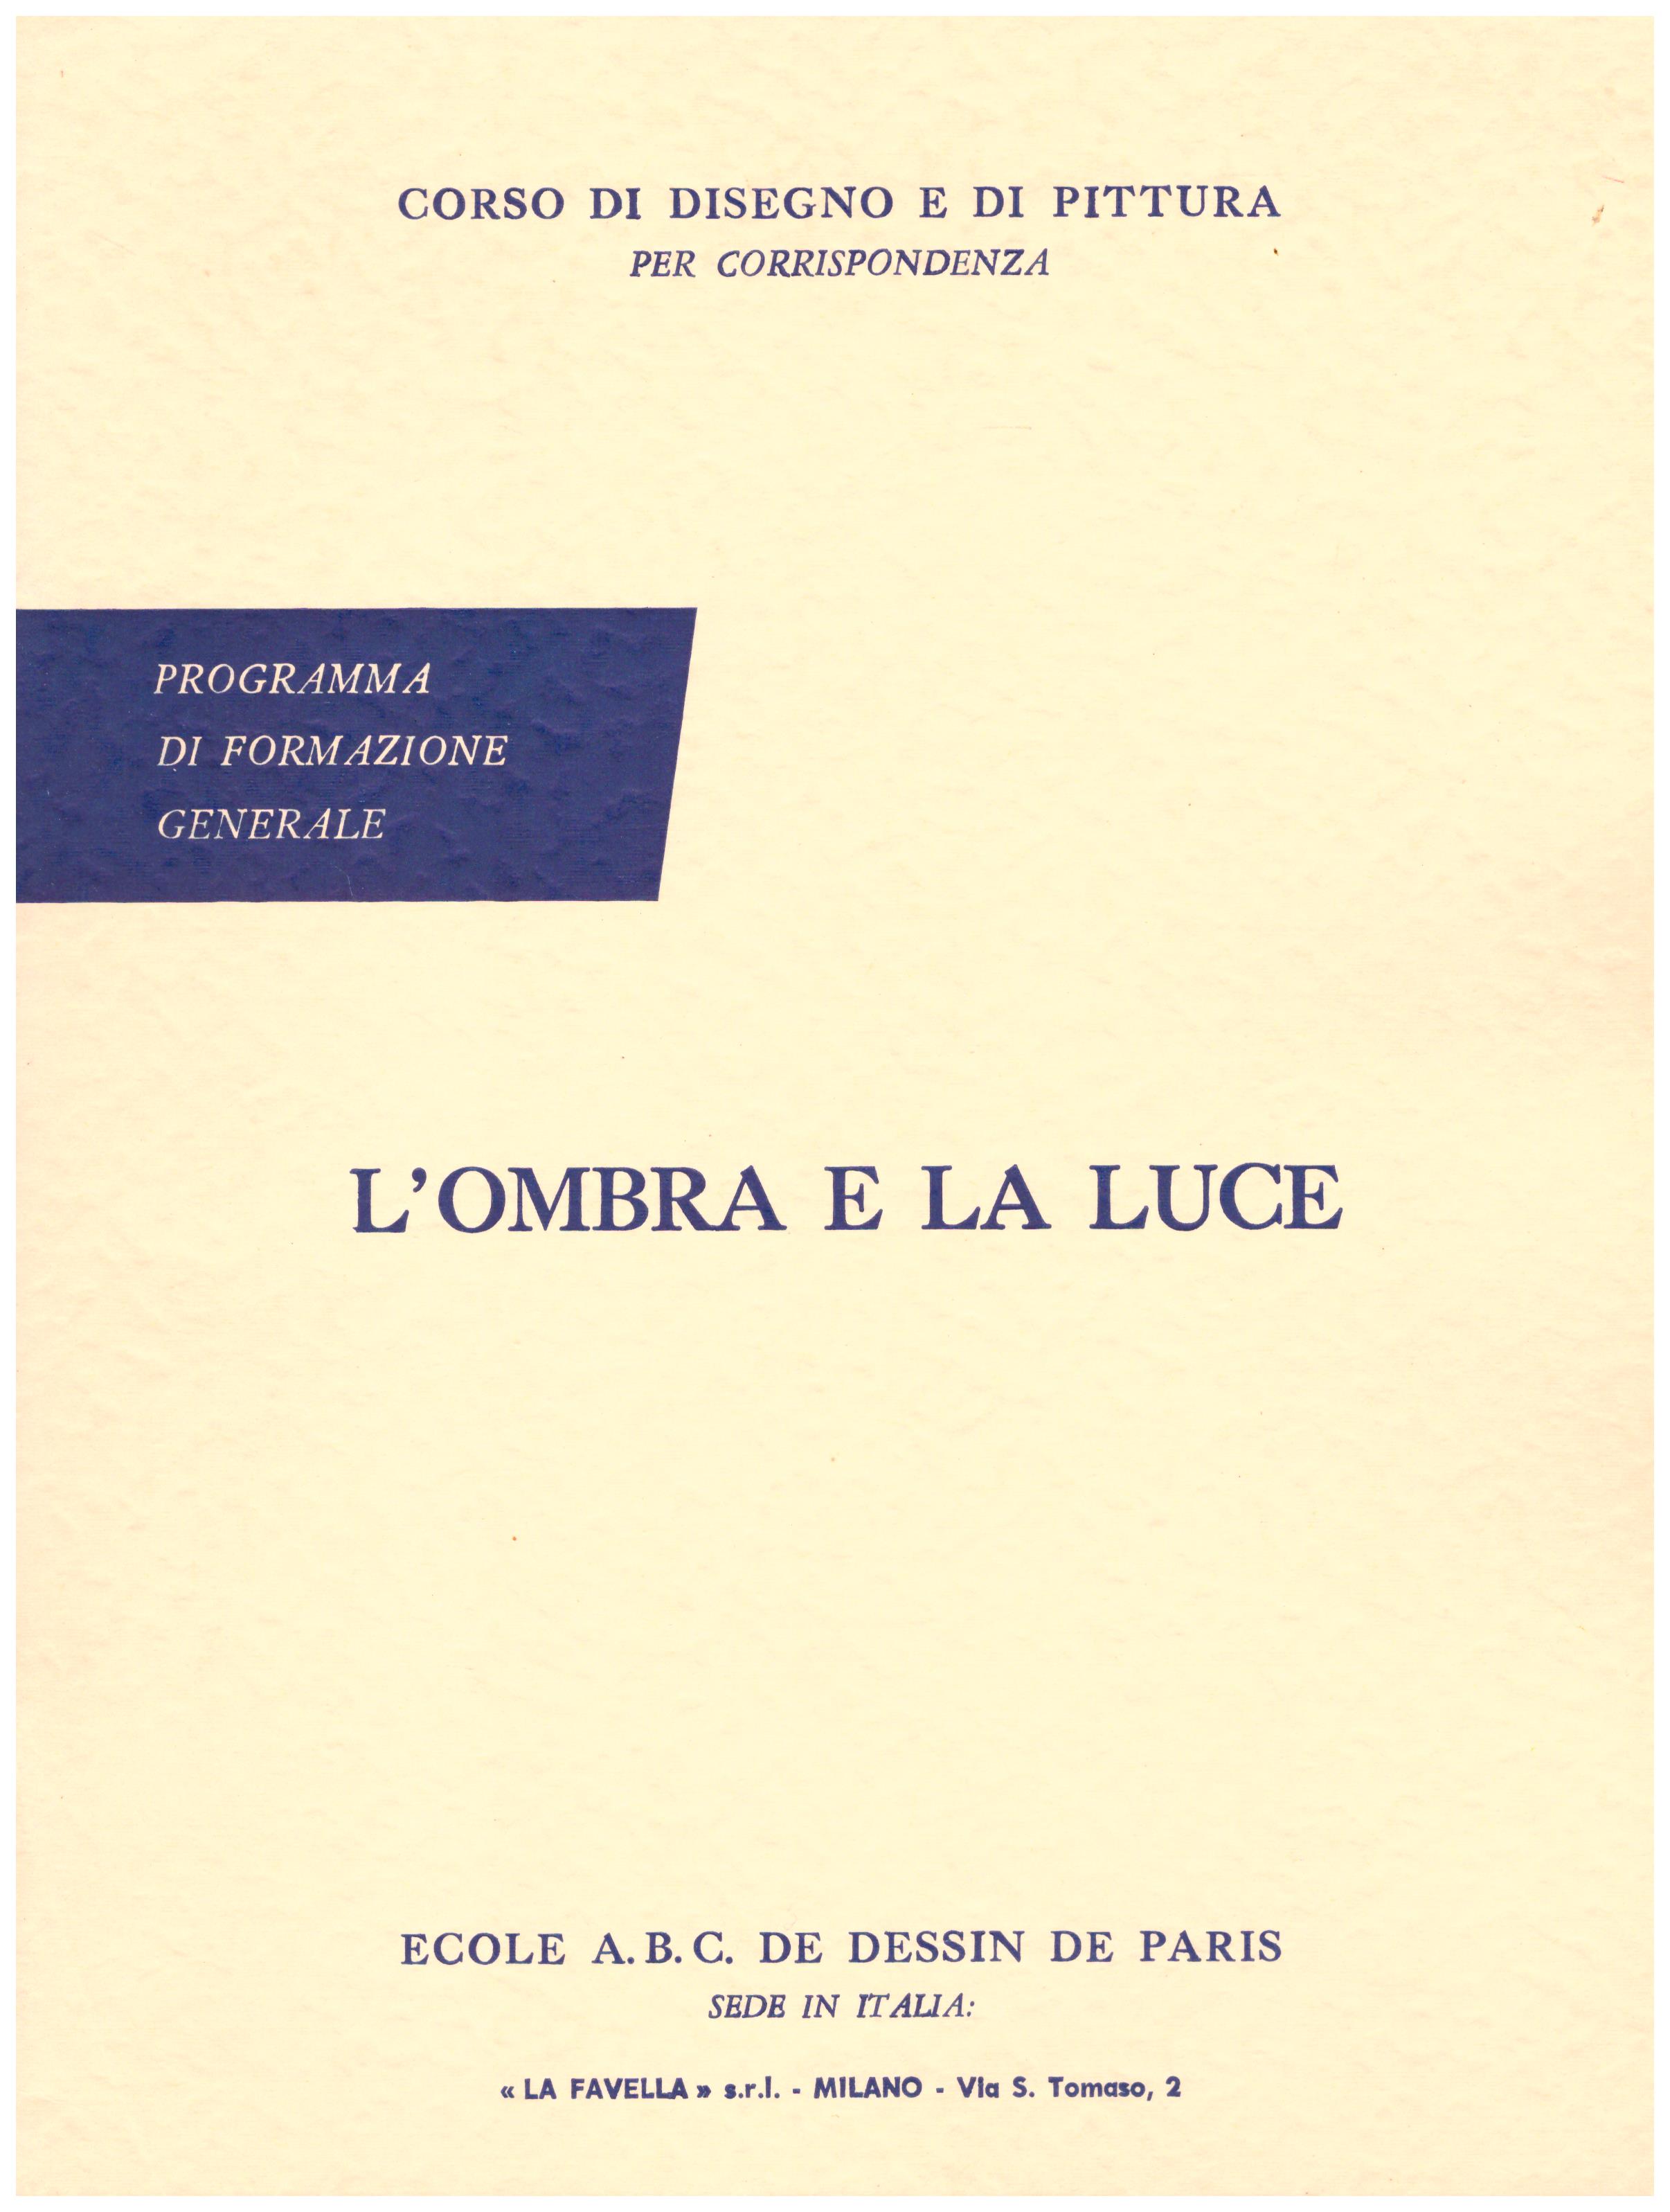 Titolo: Corso di disegno e pittura, l'ombra e la luce  Autore: AA.VV.  Editore: Ecole A.B.C. de dessin de Paris sede in Italia: La Favella, Milano 1962